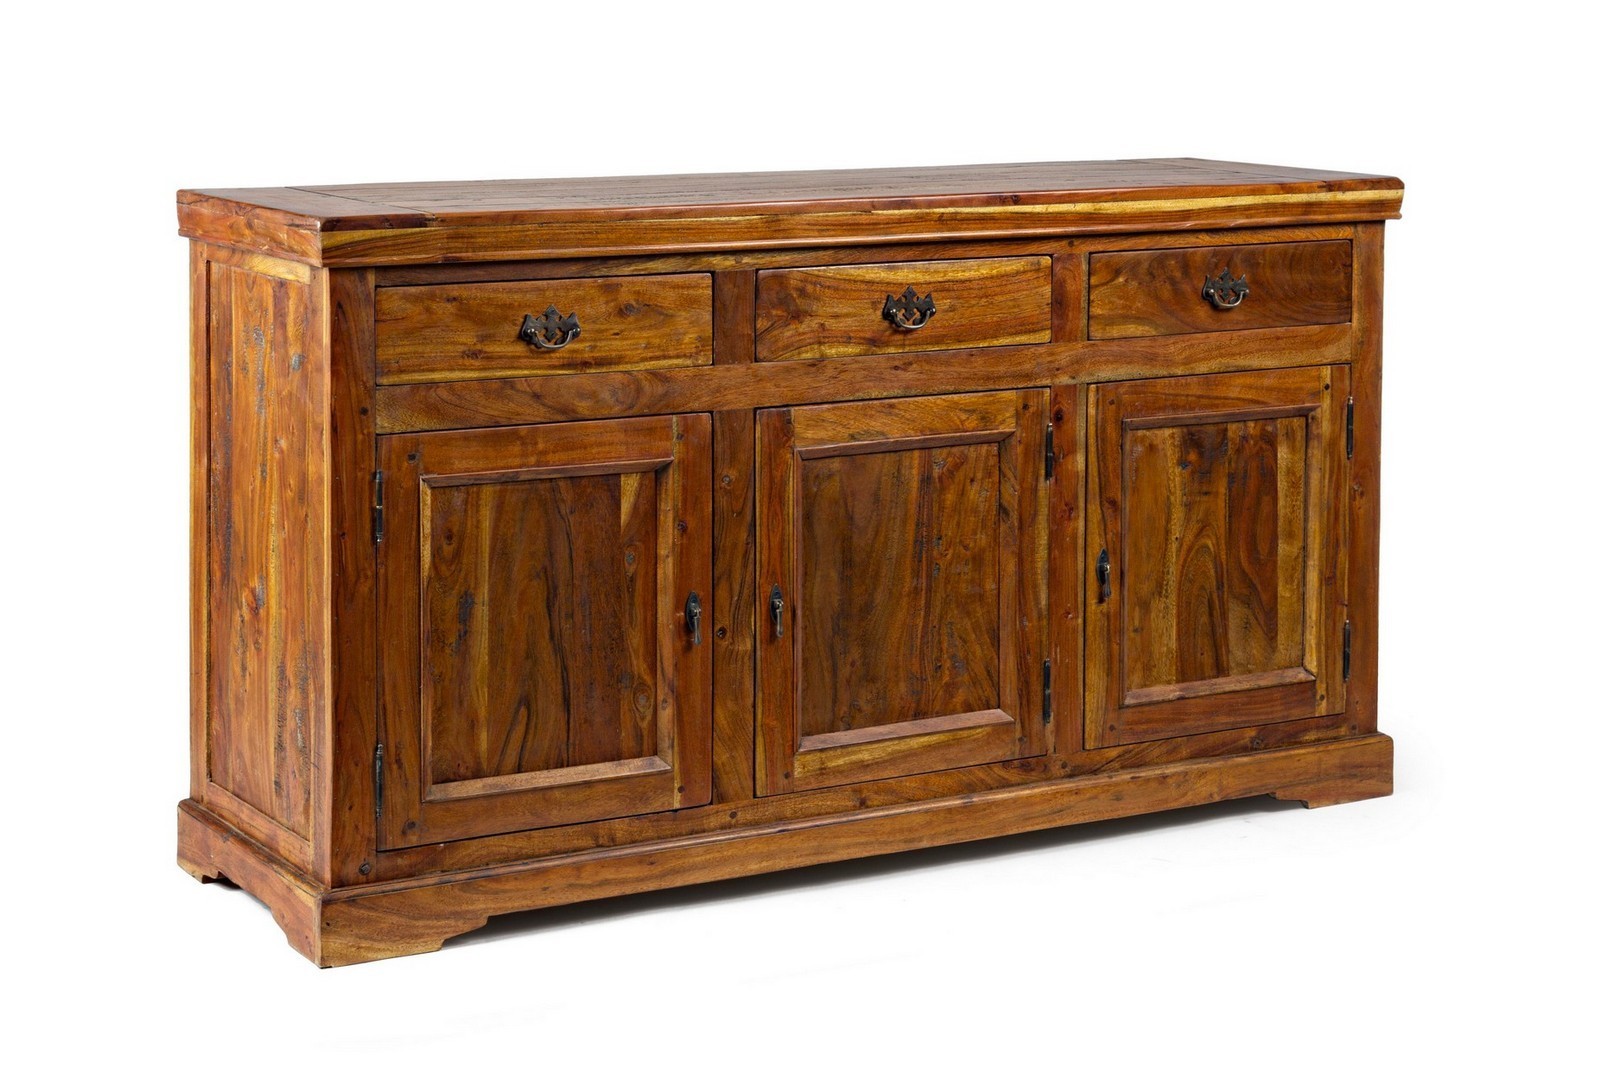 Credenza Chateaux legno massello acacia 160 x 50 x 90 h cm Bizzotto  Homemotion miglior prezzo su Arredocasastore.